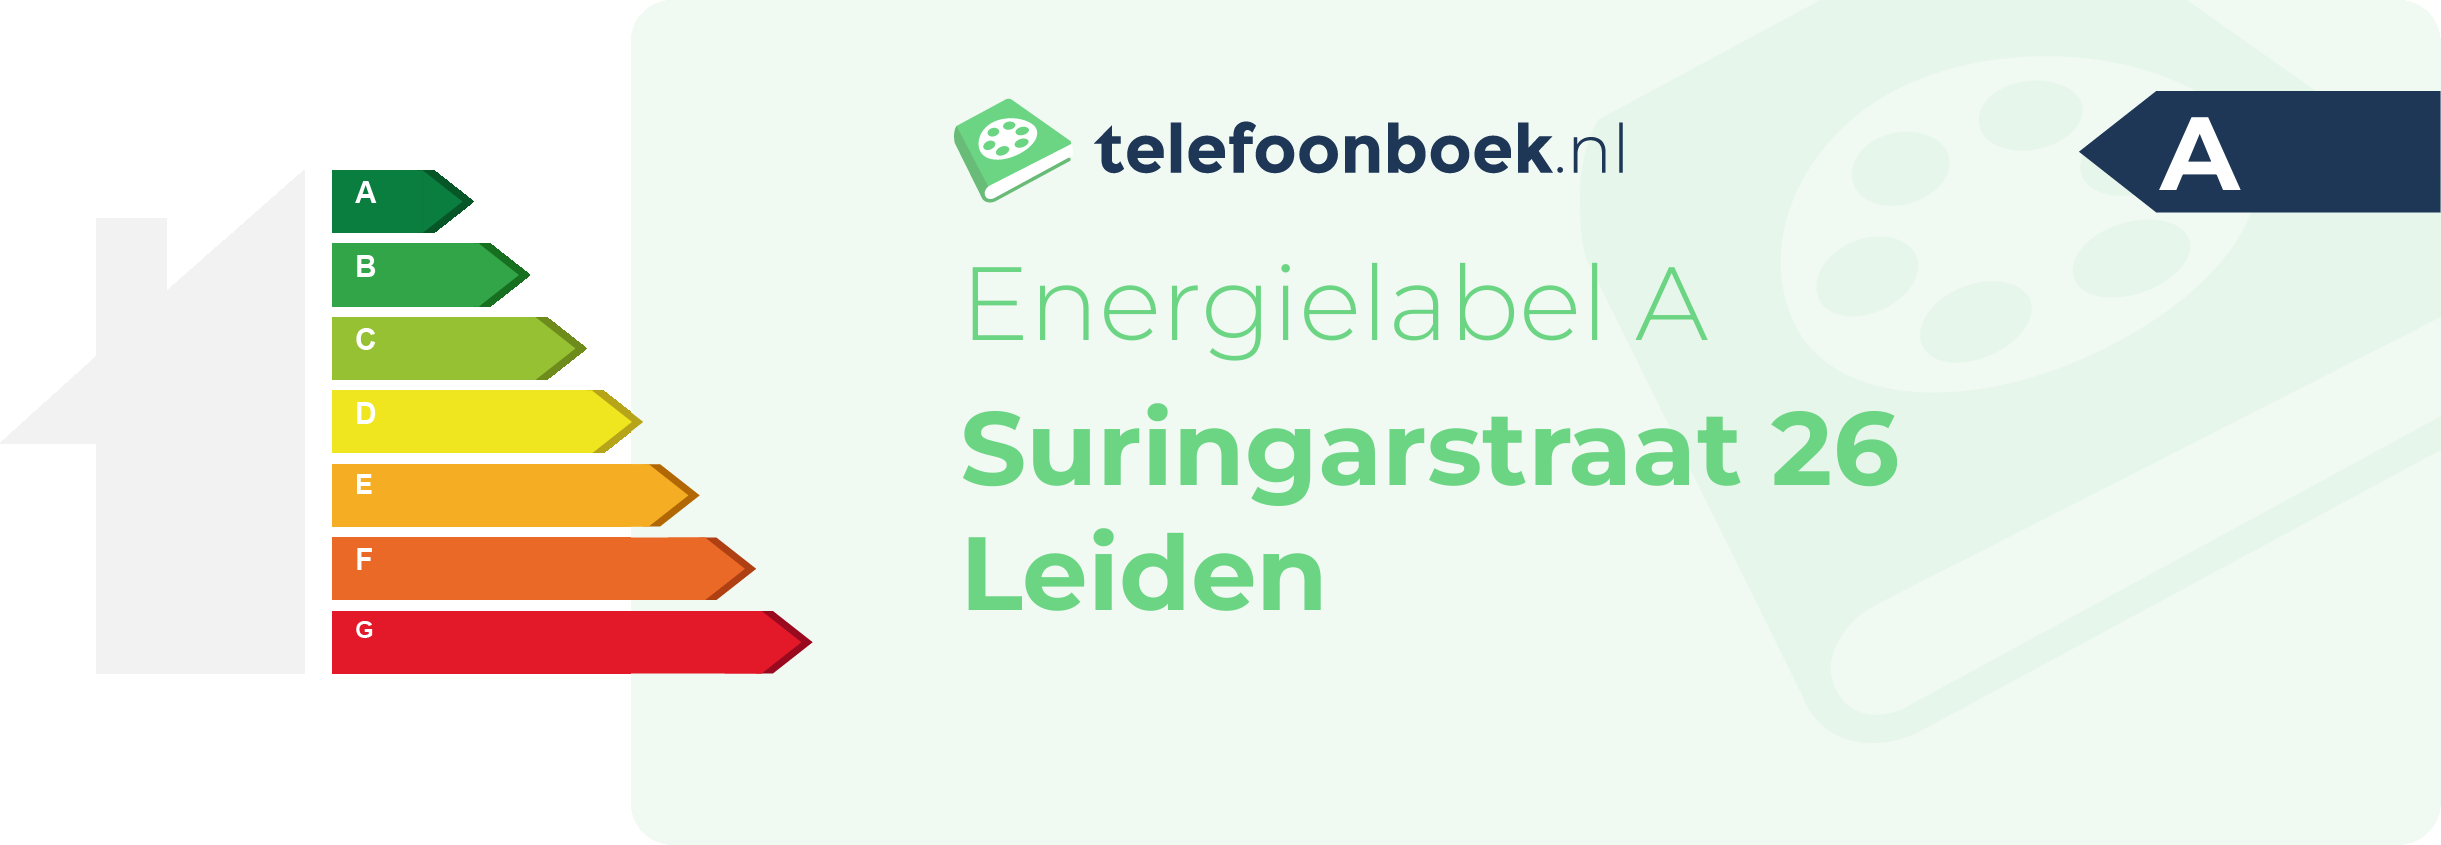 Energielabel Suringarstraat 26 Leiden